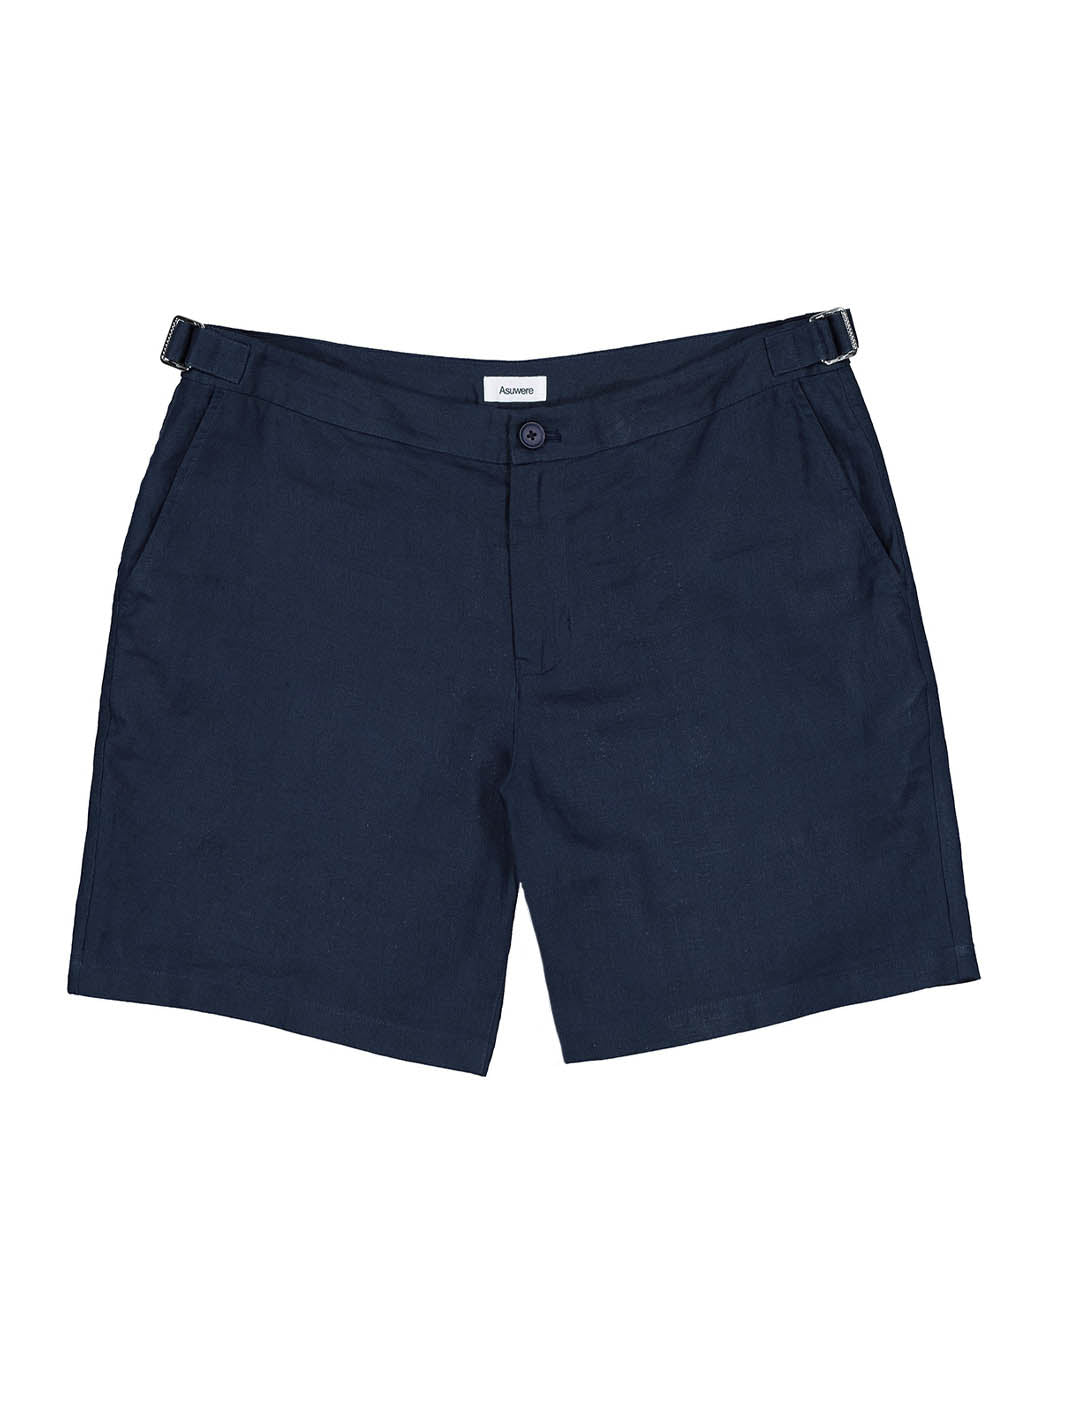 Linen Shorts + Tech Shorts